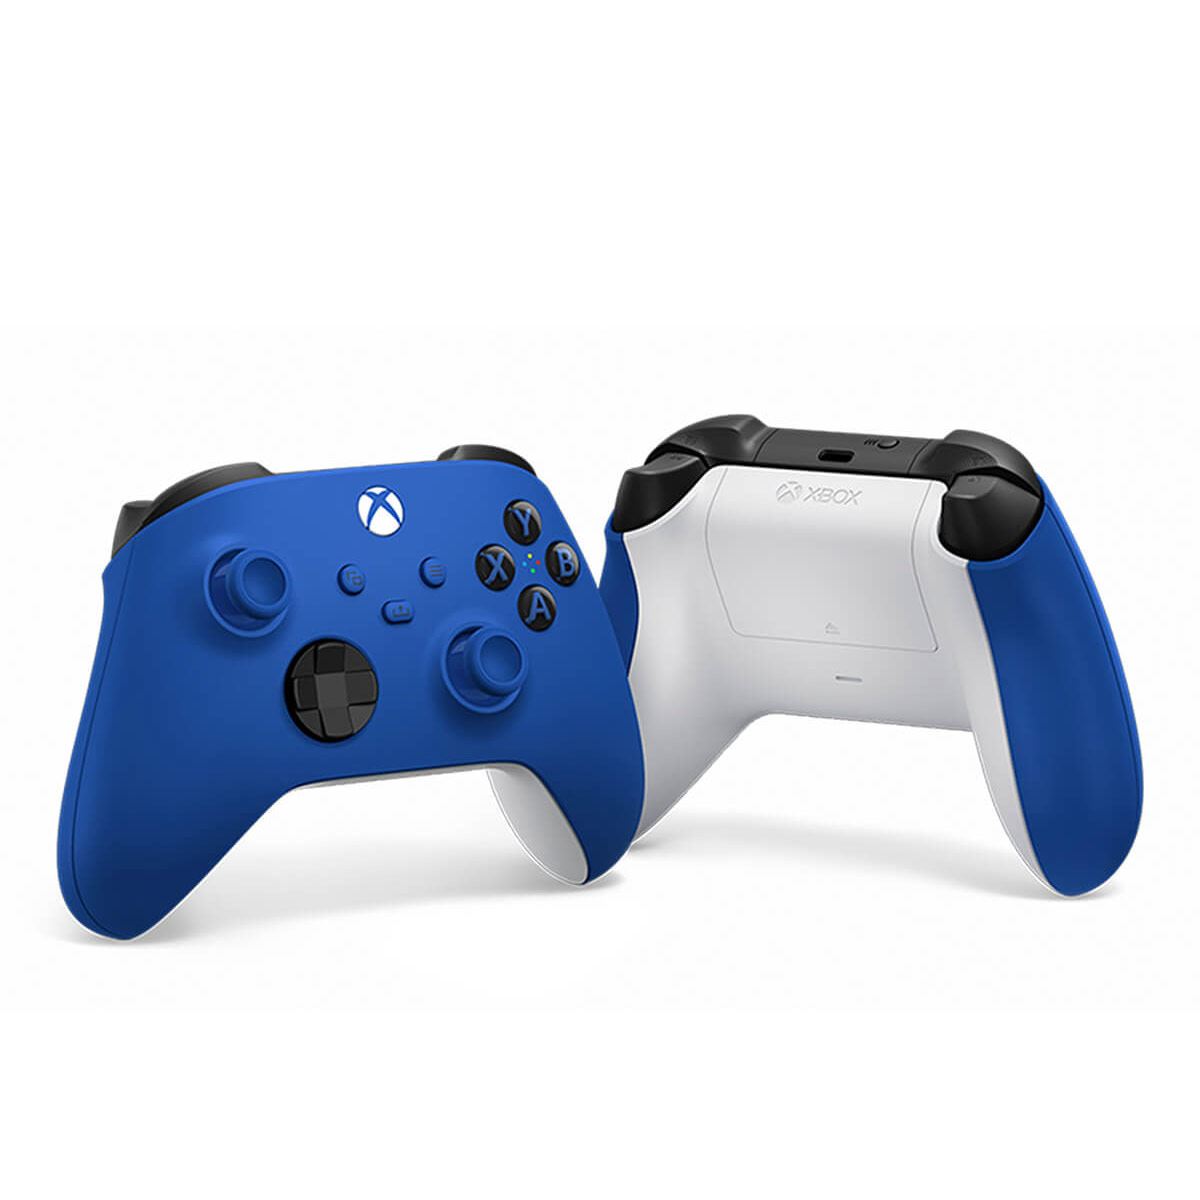  Xbox One Series X S - Controlador suave al tacto, tacto suave,  agarre añadido, color azul frío, compatible con Xbox One, Series X, Series S  : Todo lo demás